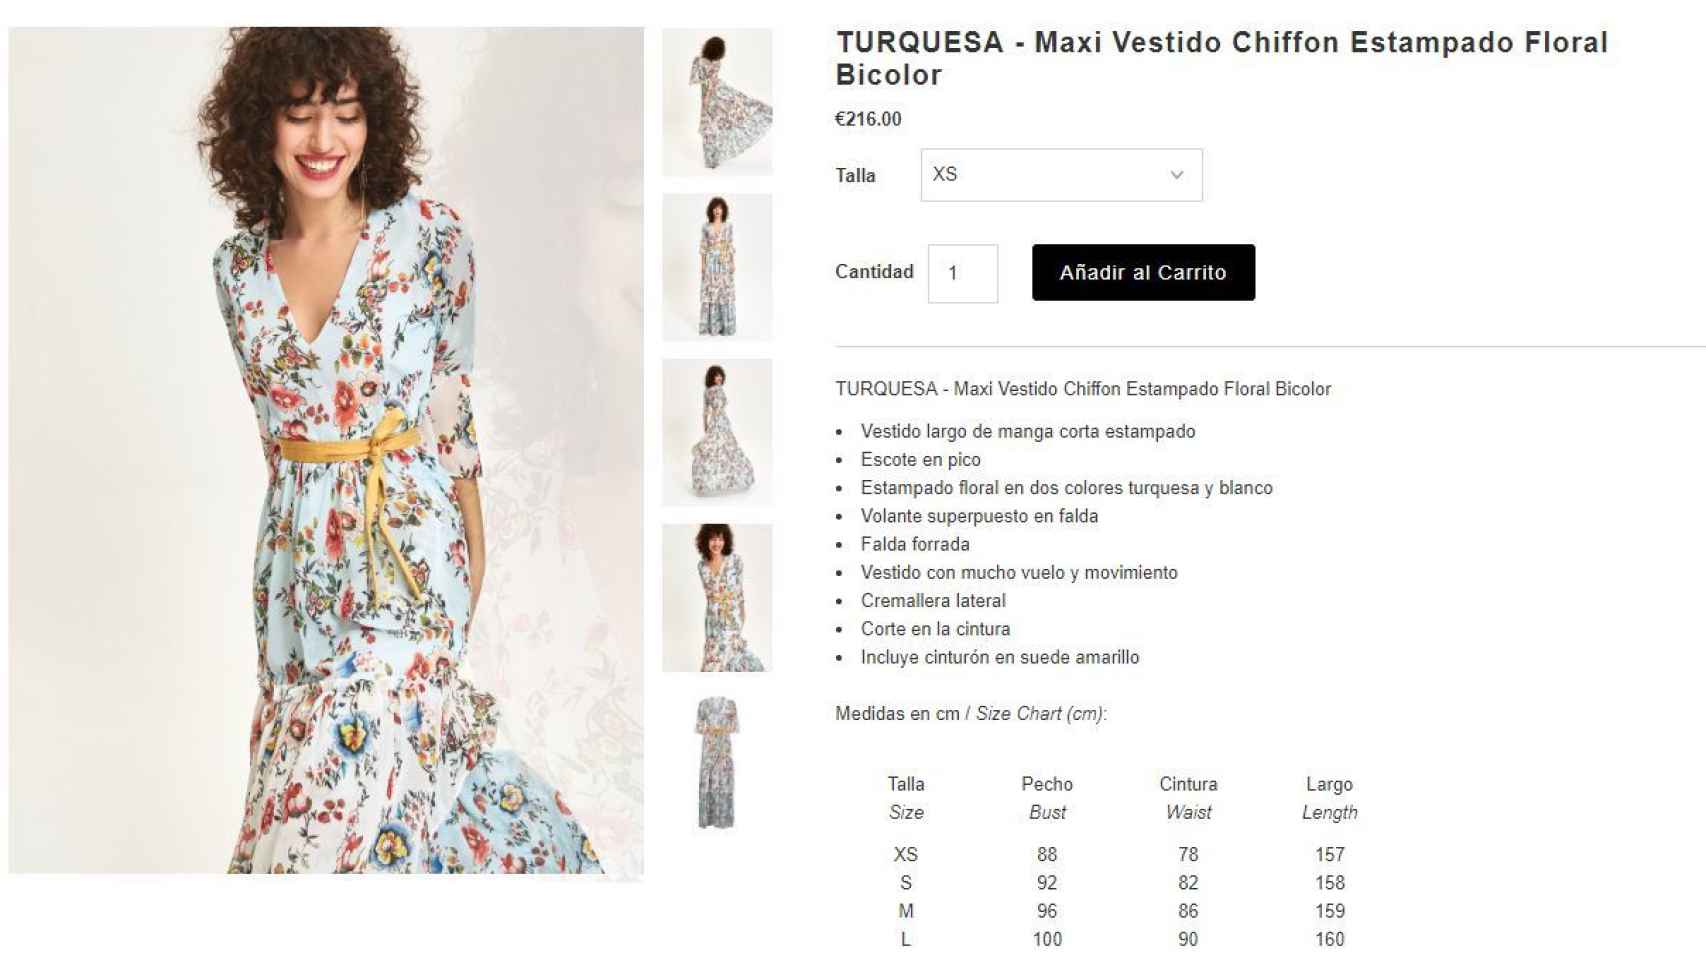 Captura de la compra online  del vestido.